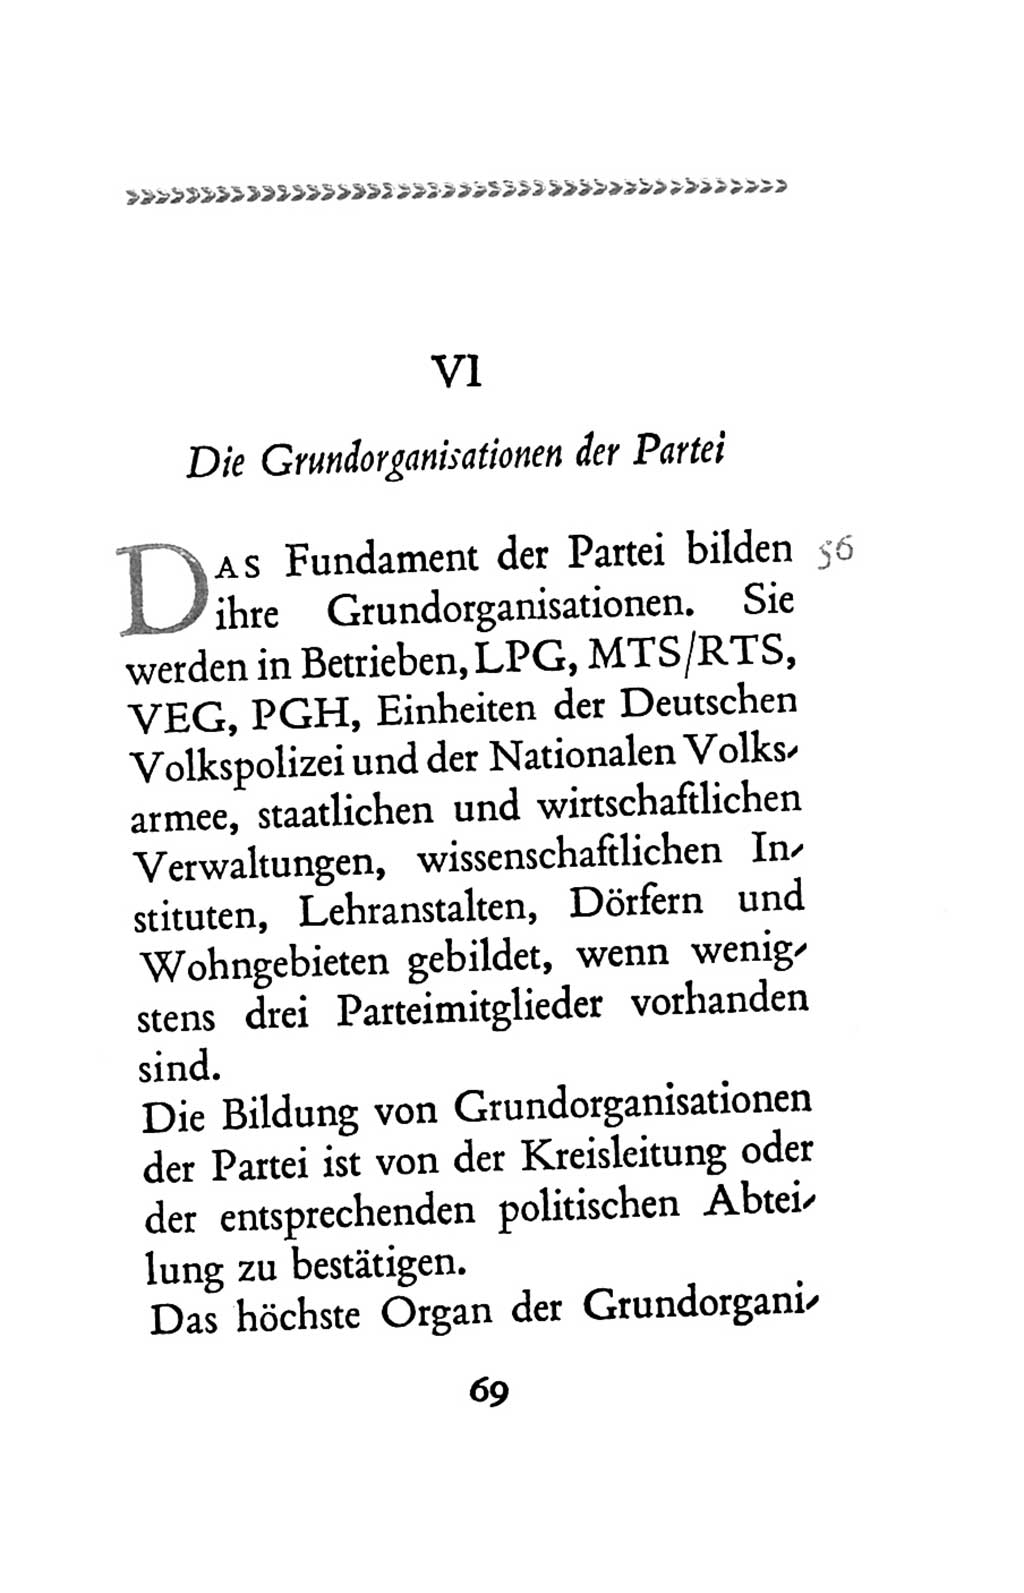 Statut der Sozialistischen Einheitspartei Deutschlands (SED) 1963, Seite 69 (St. SED DDR 1963, S. 69)